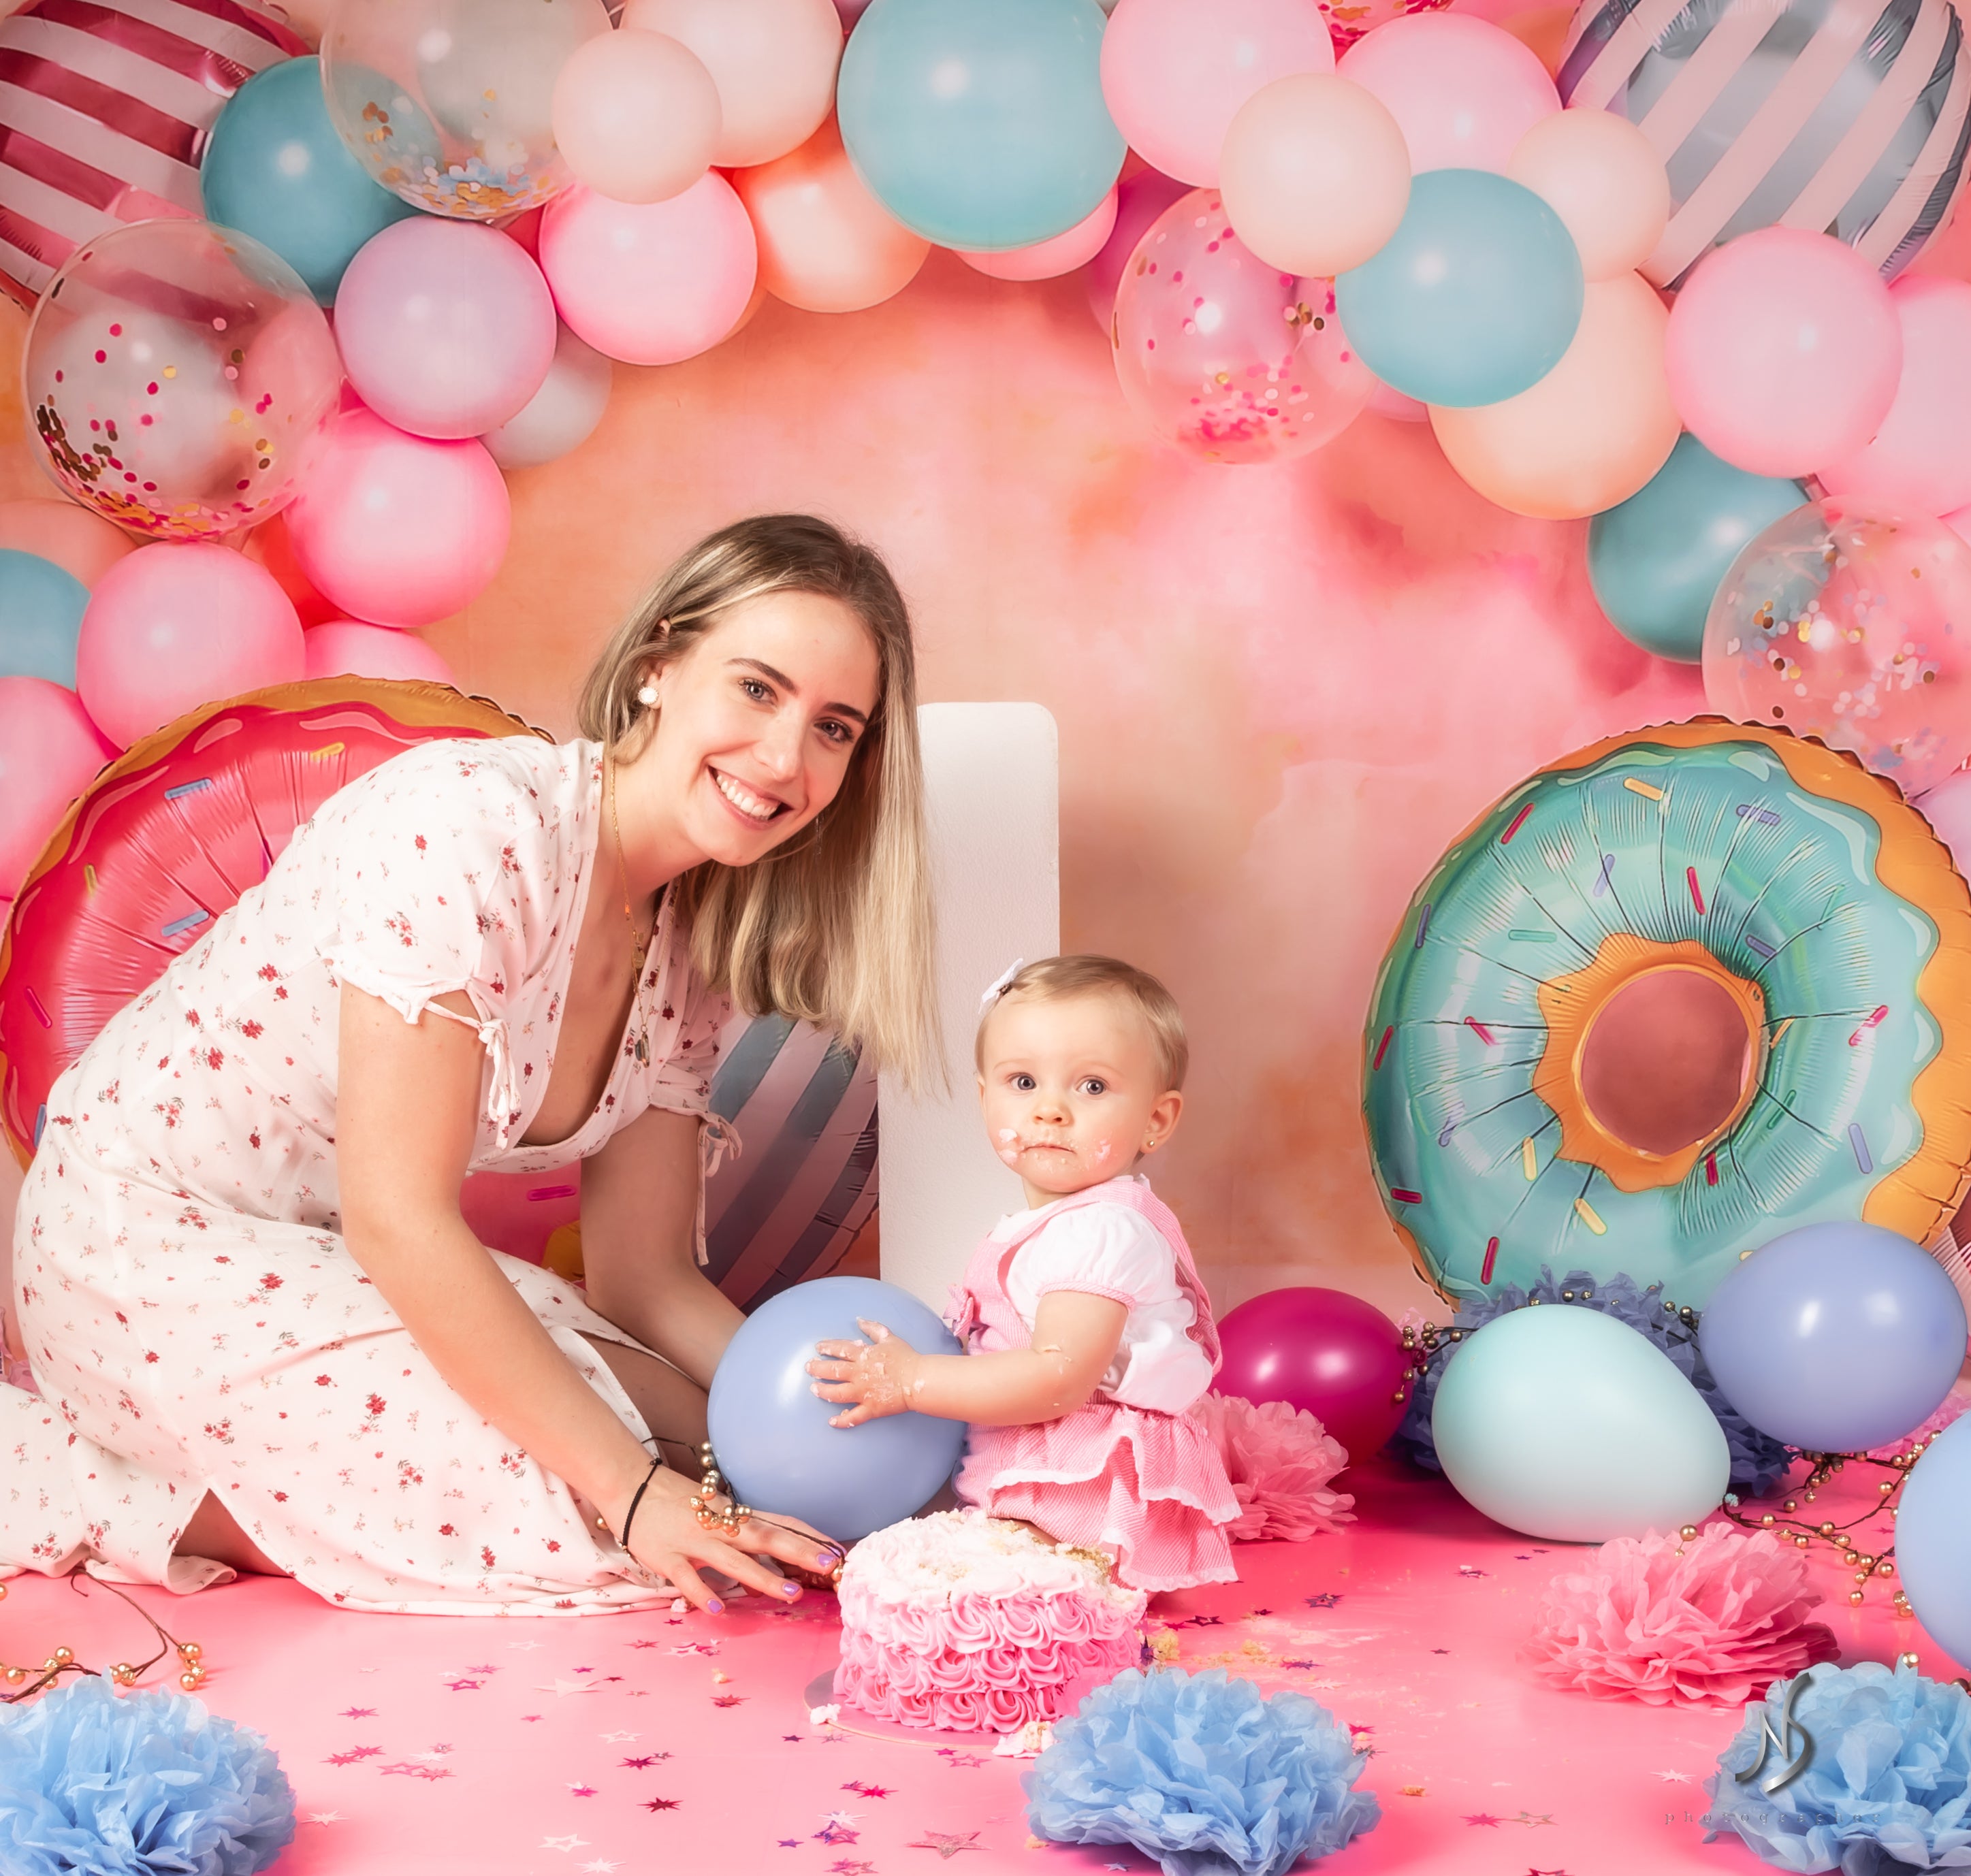 Kate Ballons Cake smash Donut Anniversaire Toile de fond conçu par Emetselch